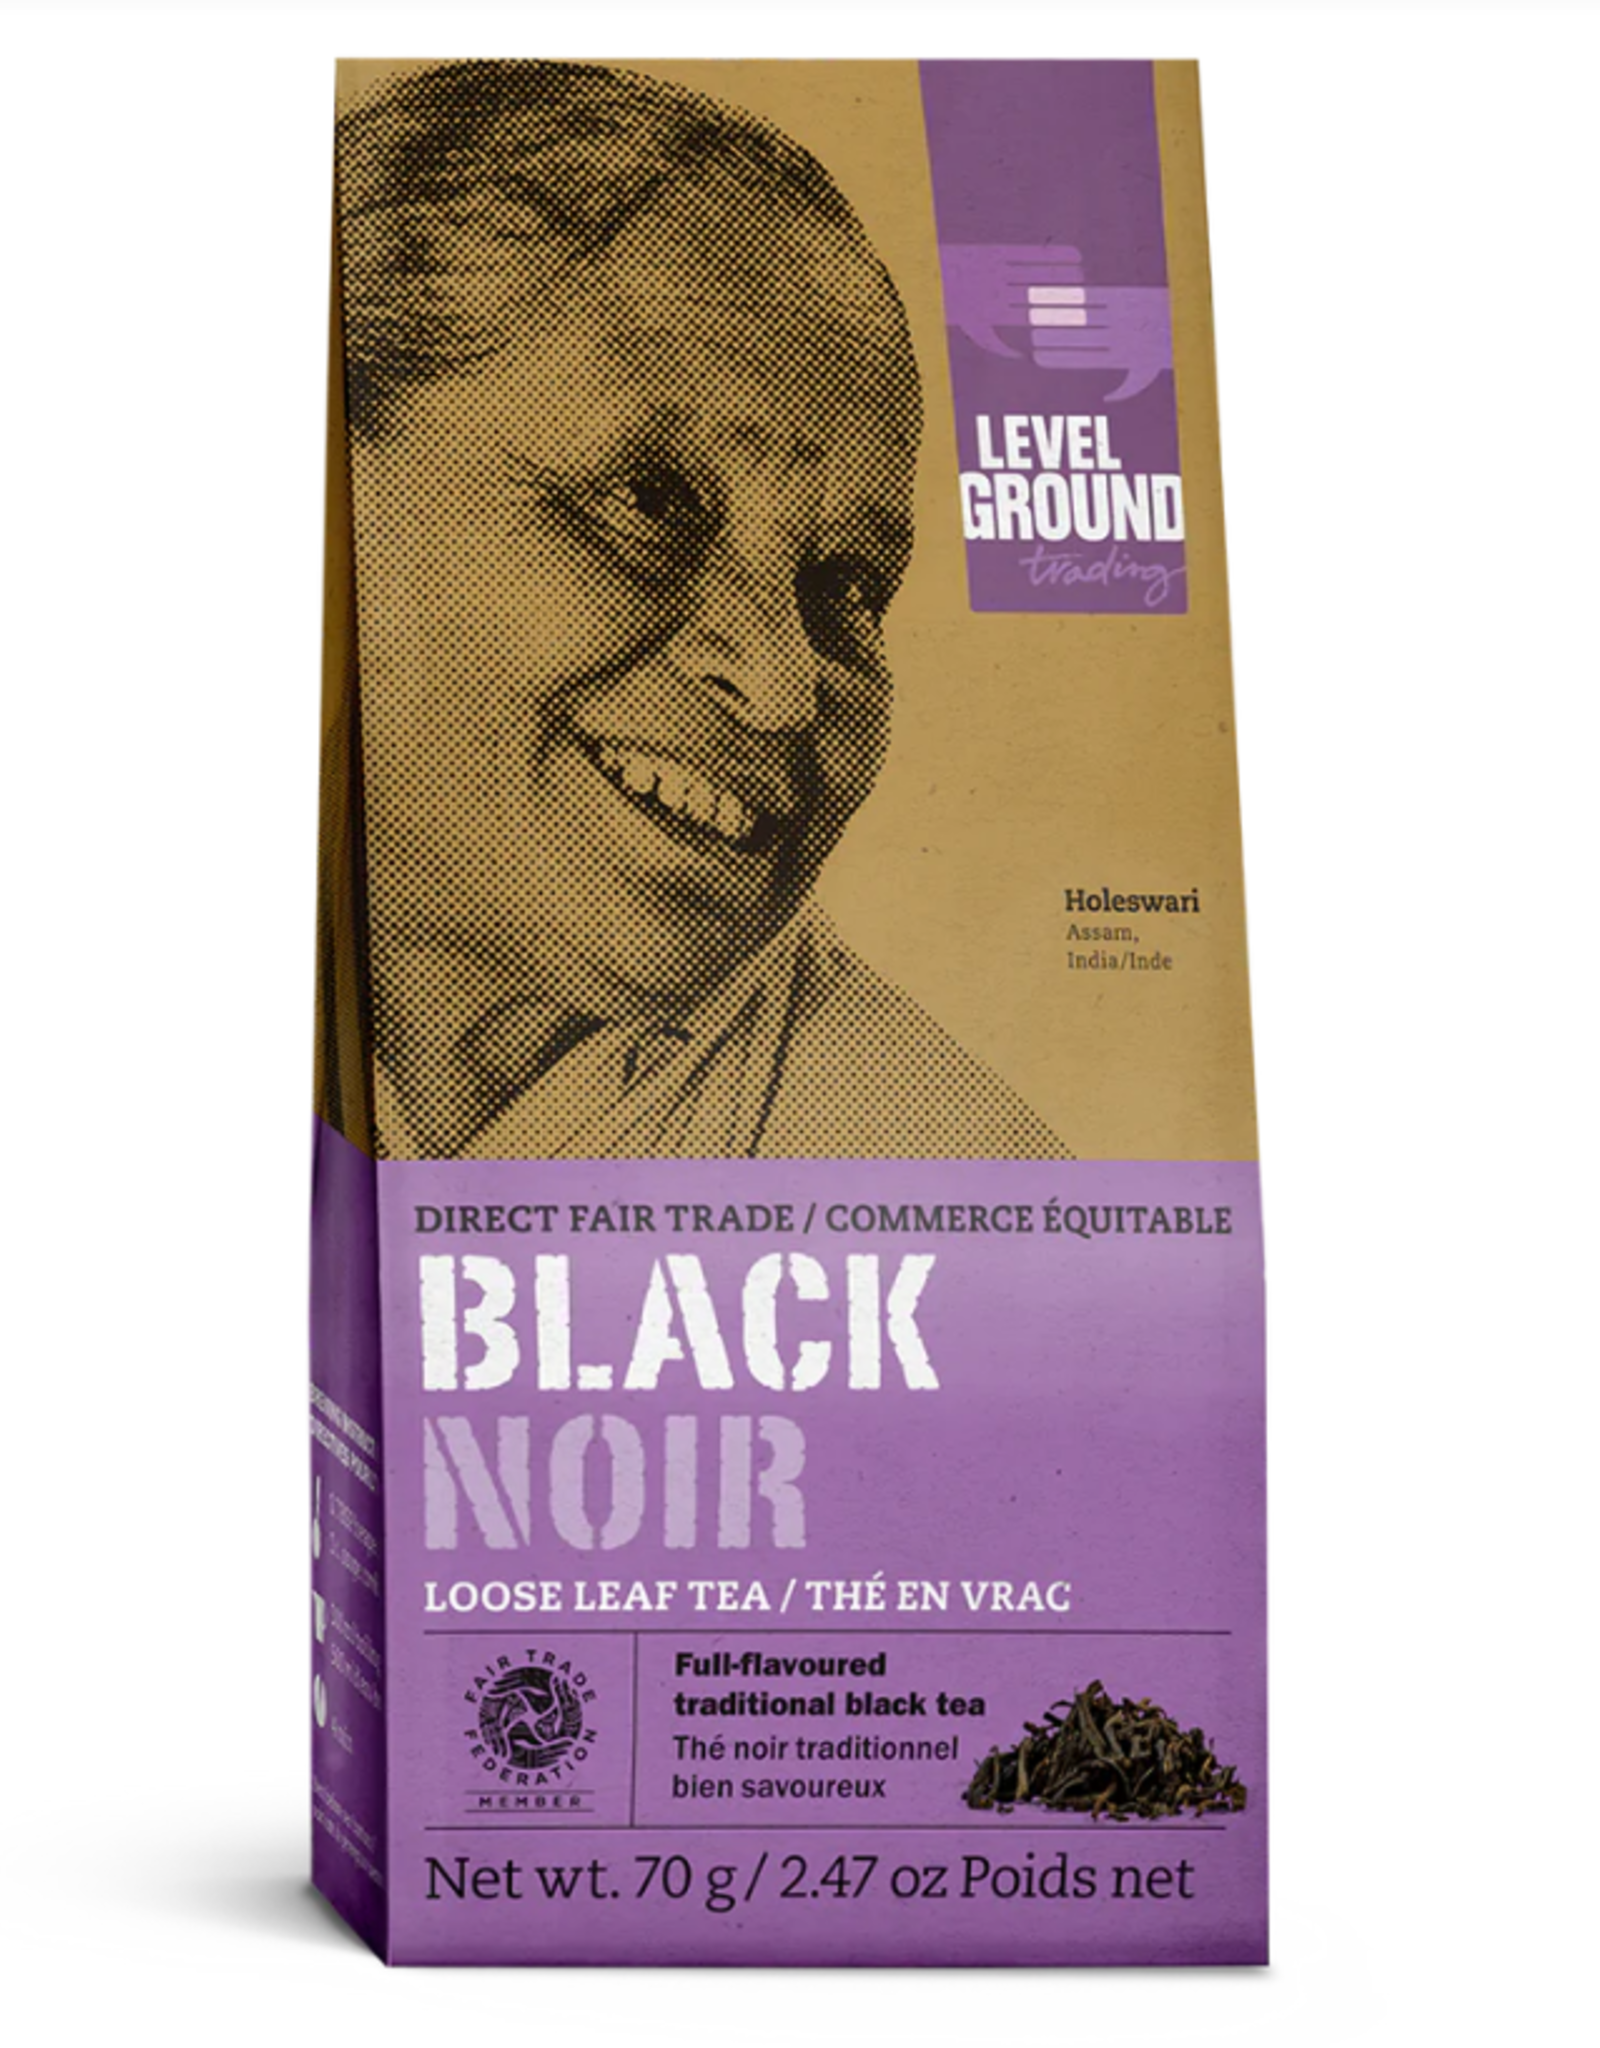 Level Ground Black Tea (Loose Leaf)